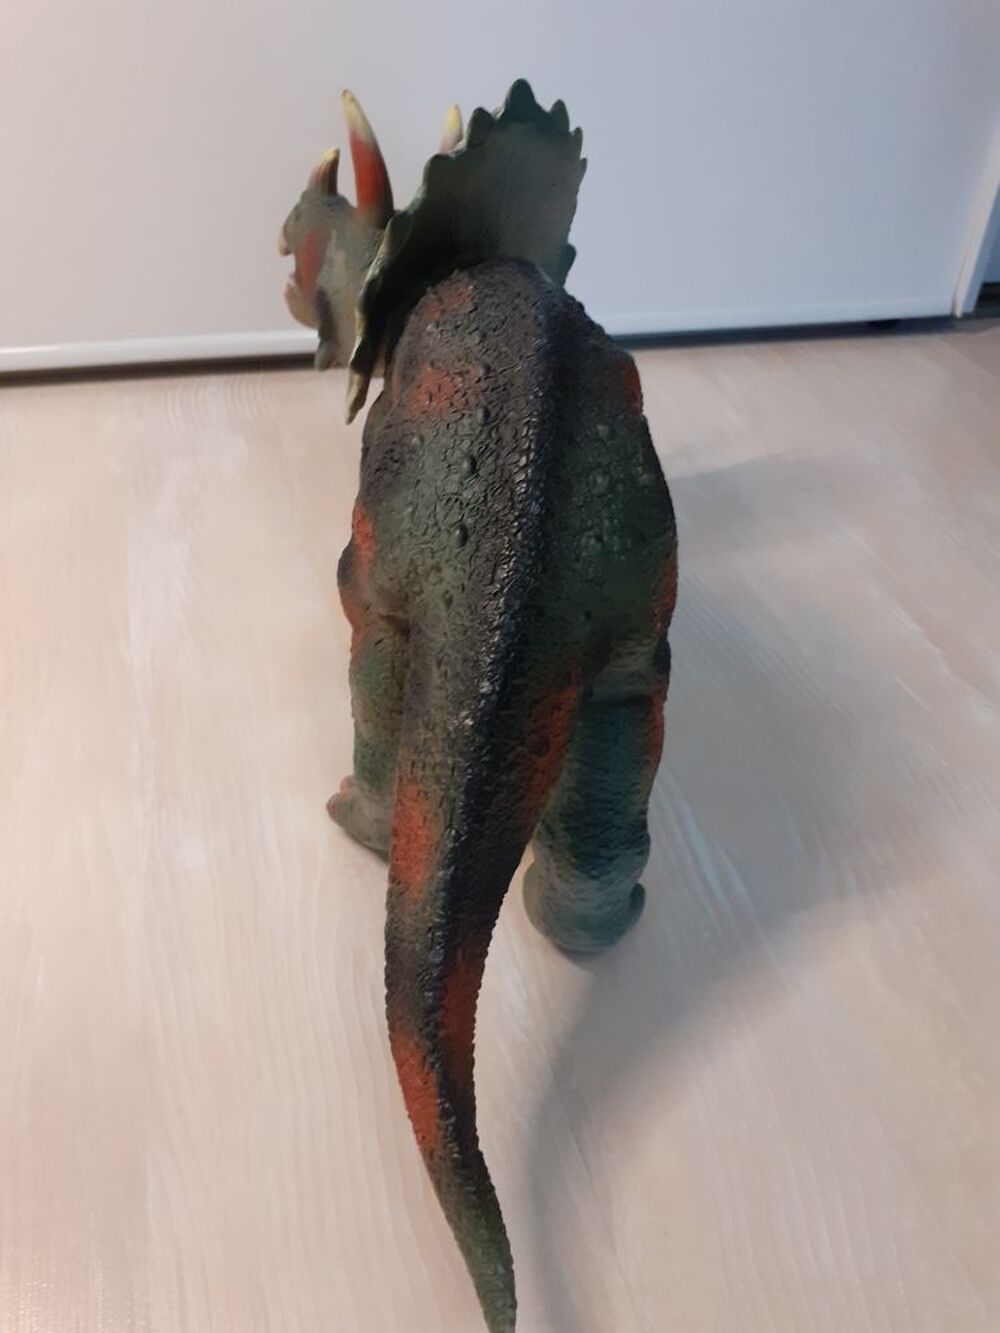 Grande Figurine &quot;Dinosaure&quot; de 43 cm - Marque Toys R Us Jeux / jouets